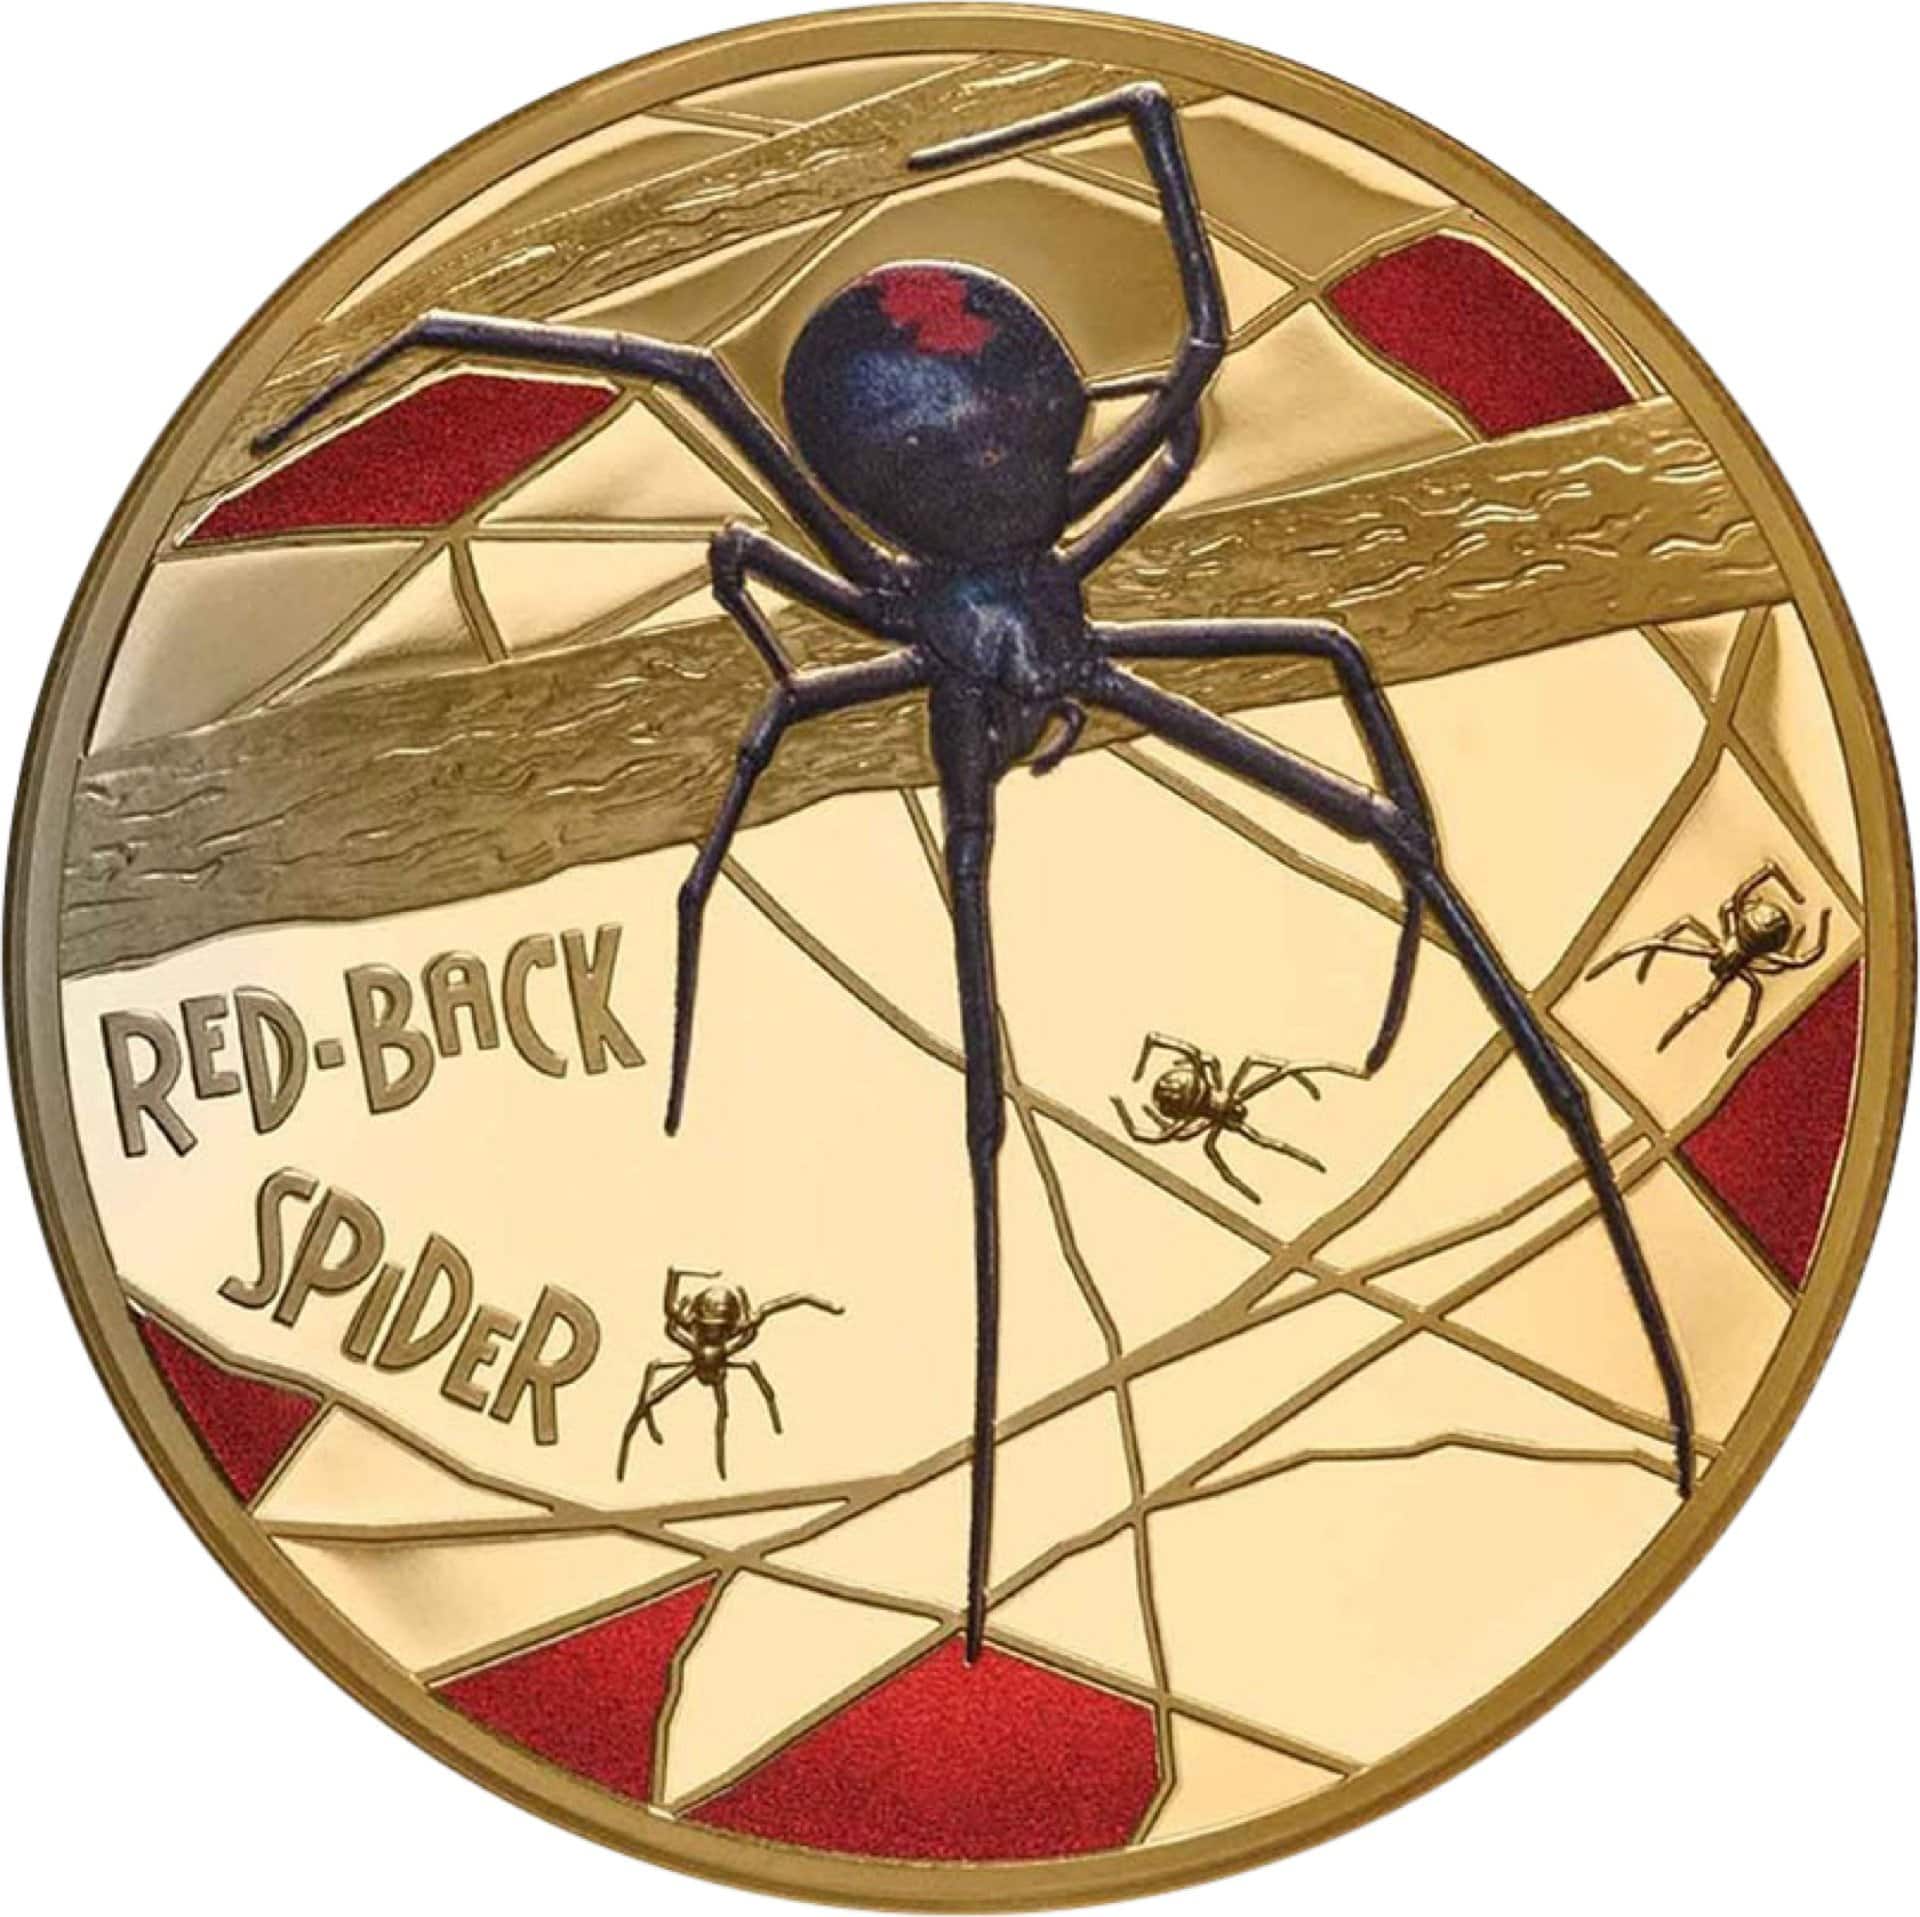 5 Unze Gold Red Back Spider 2020 PP (Auflage: 50 | Polierte Platte)